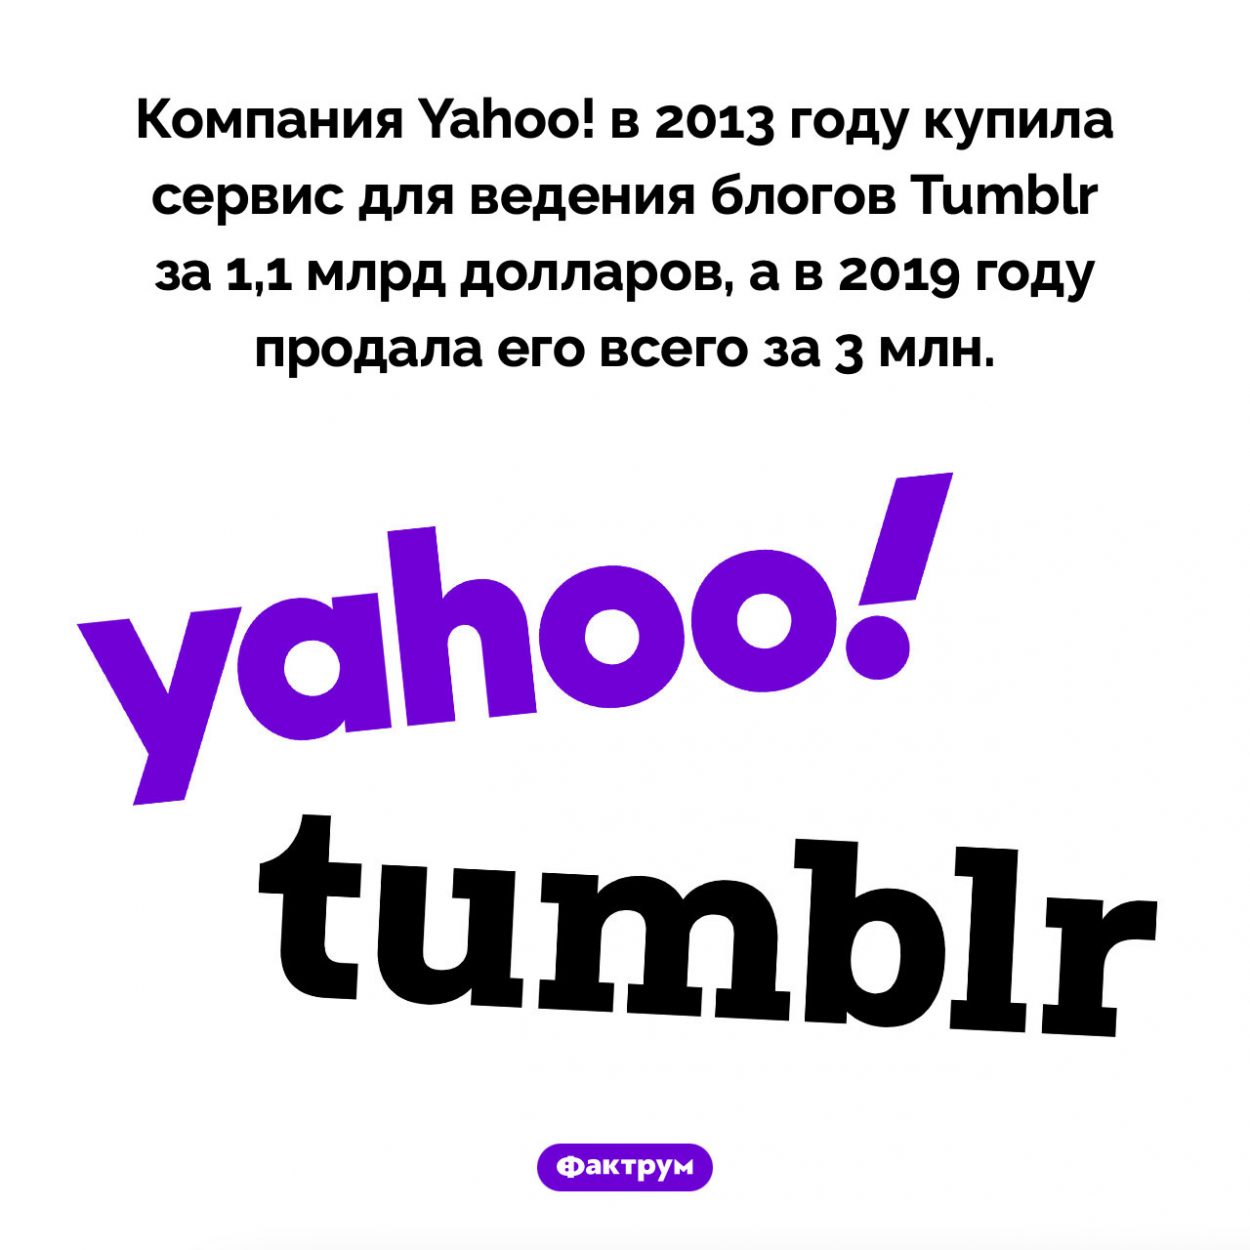 Как Yahoo! Tumblr покупала. Компания Yahoo! в 2013 году купила сервис для ведения блогов Tumblr за 1,1 млрд долларов, а в 2019 году продала его всего за 3 млн.